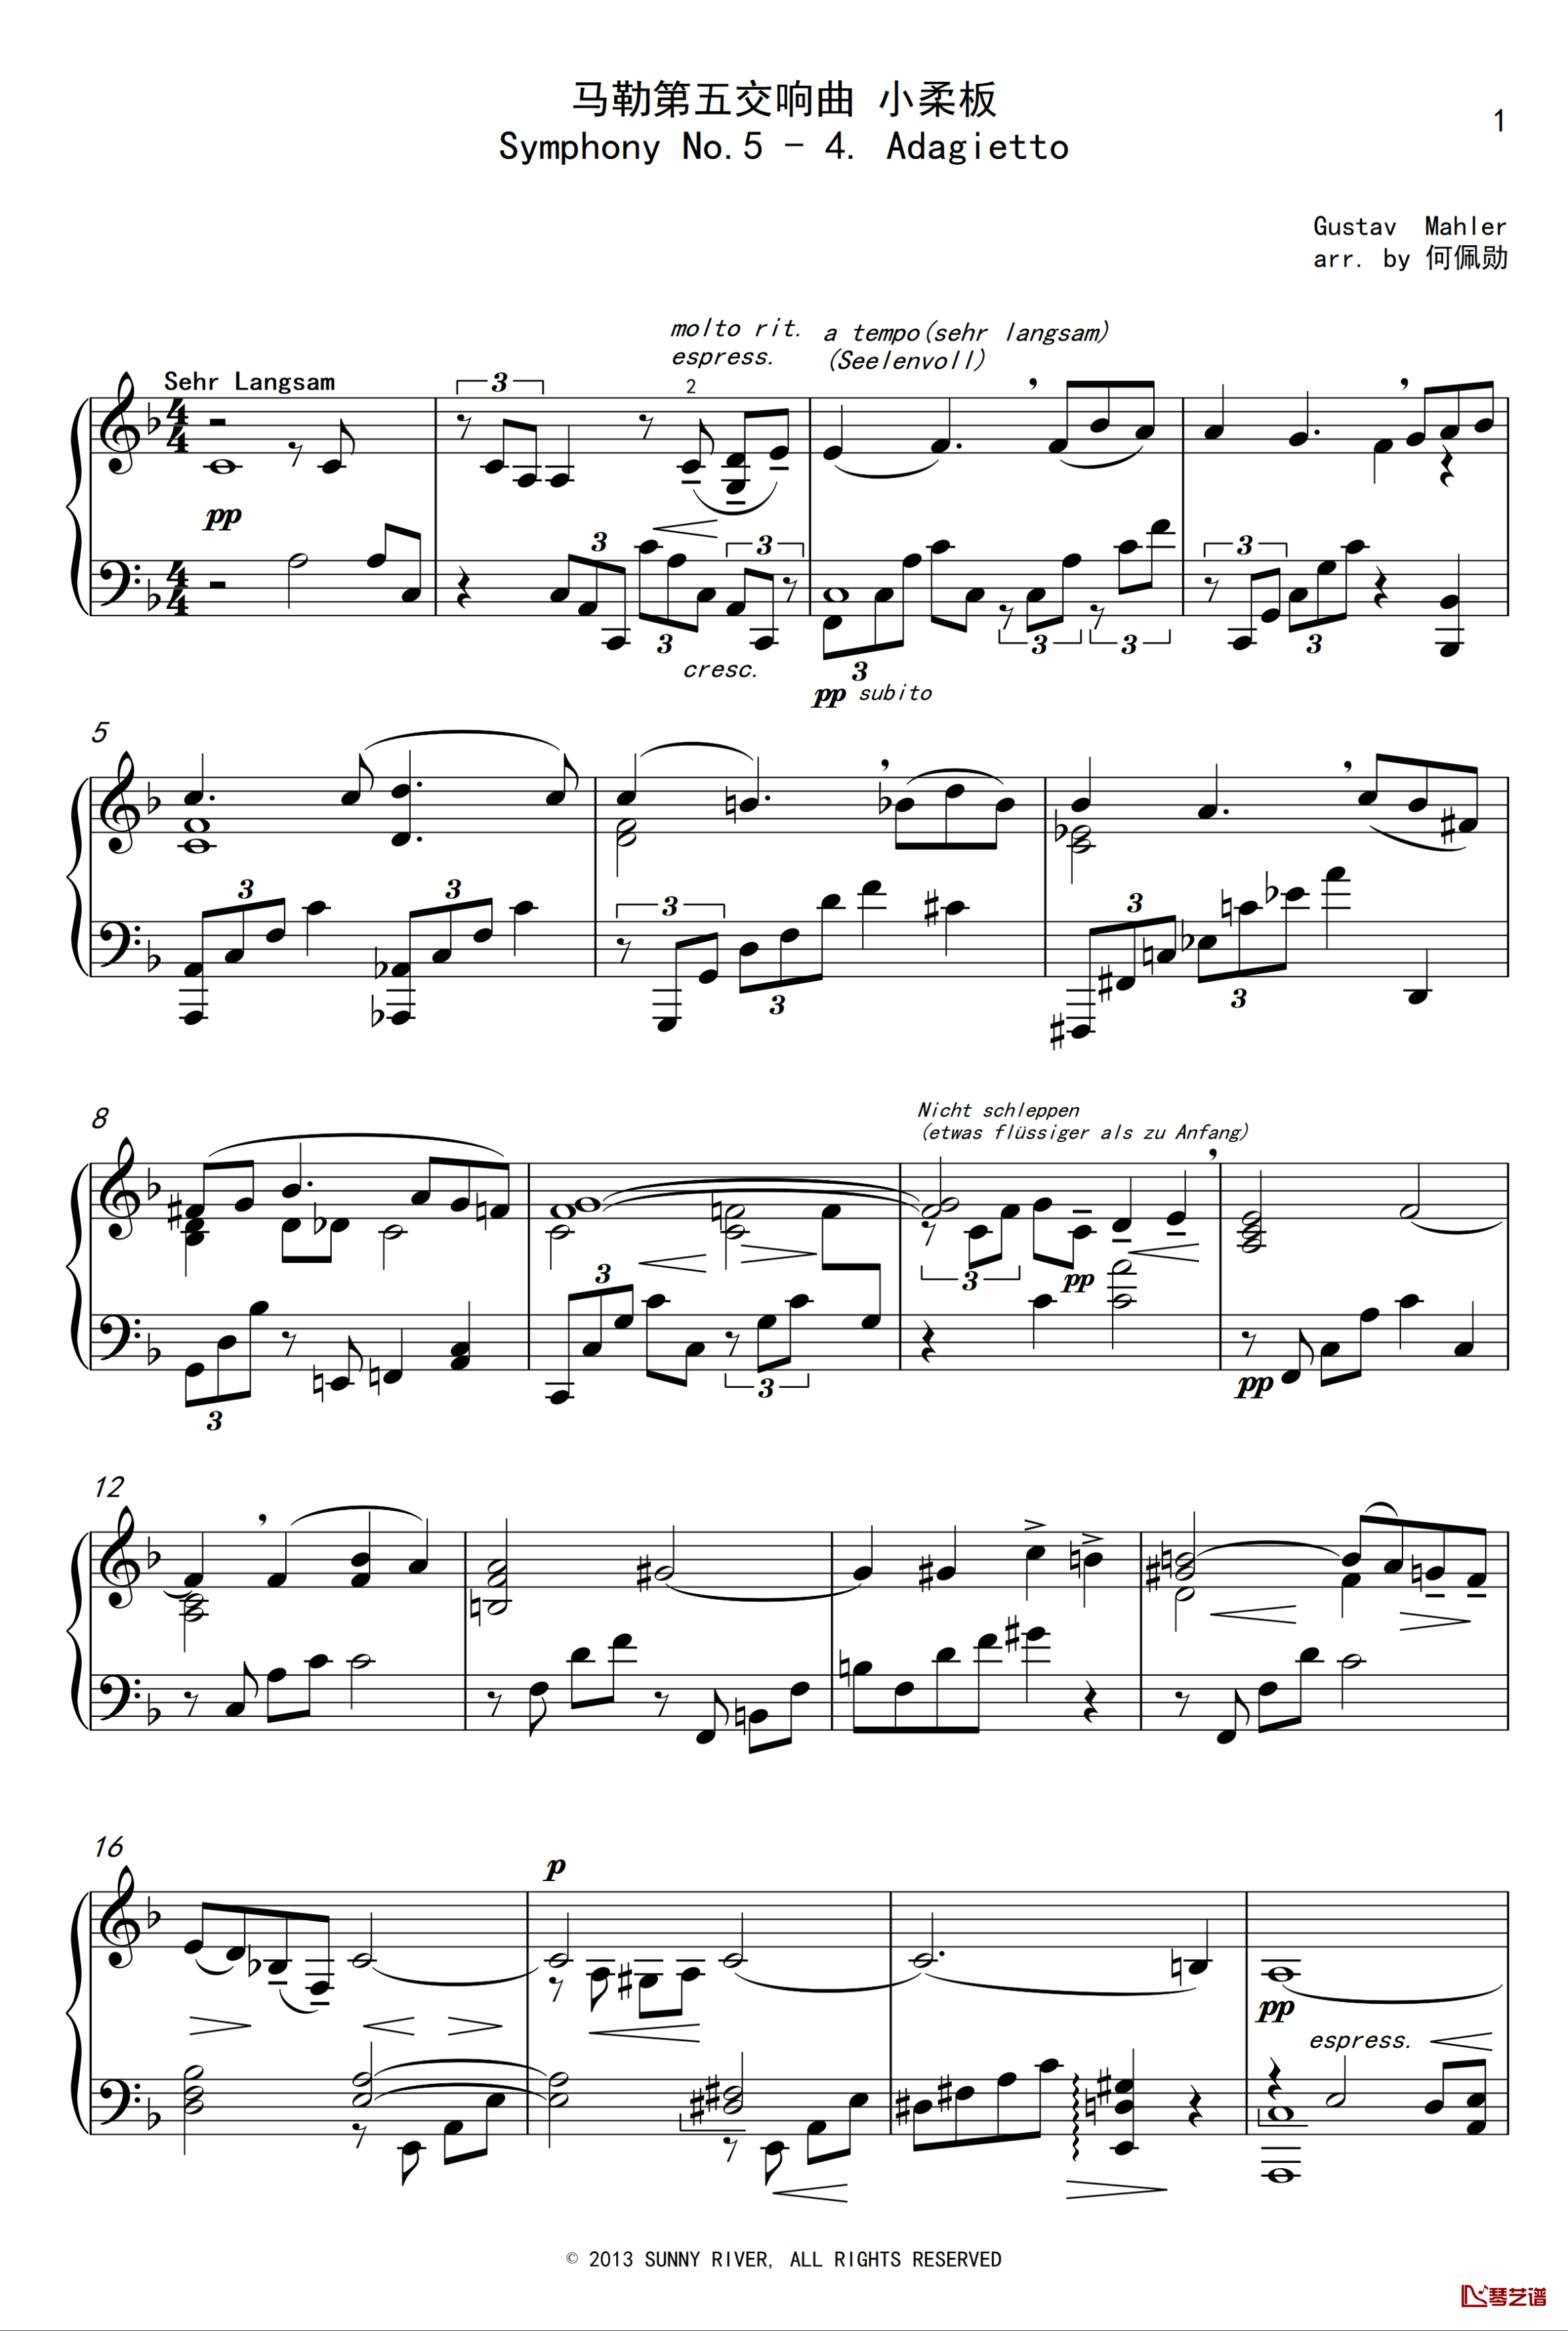 马勒第五交响曲 小柔板 钢琴谱-Mahler Symphony No.5 - 4. Adagietto 何佩勋编配-马勒-Z.D.Lin1